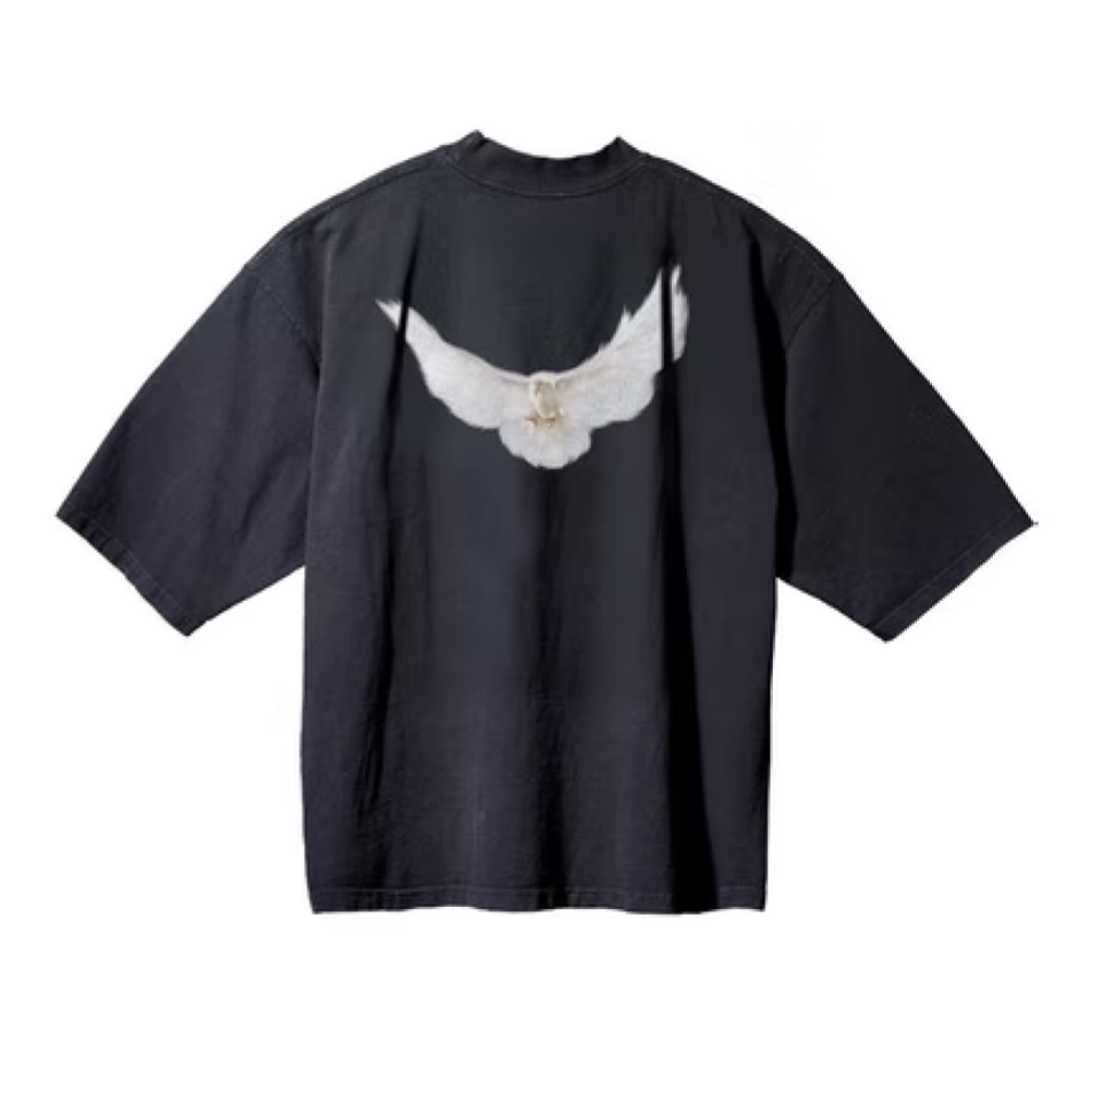 Yeezy Gap Engineered by Balenciaga 3/4 Sleeve Tee 'Dove' | OX STREET